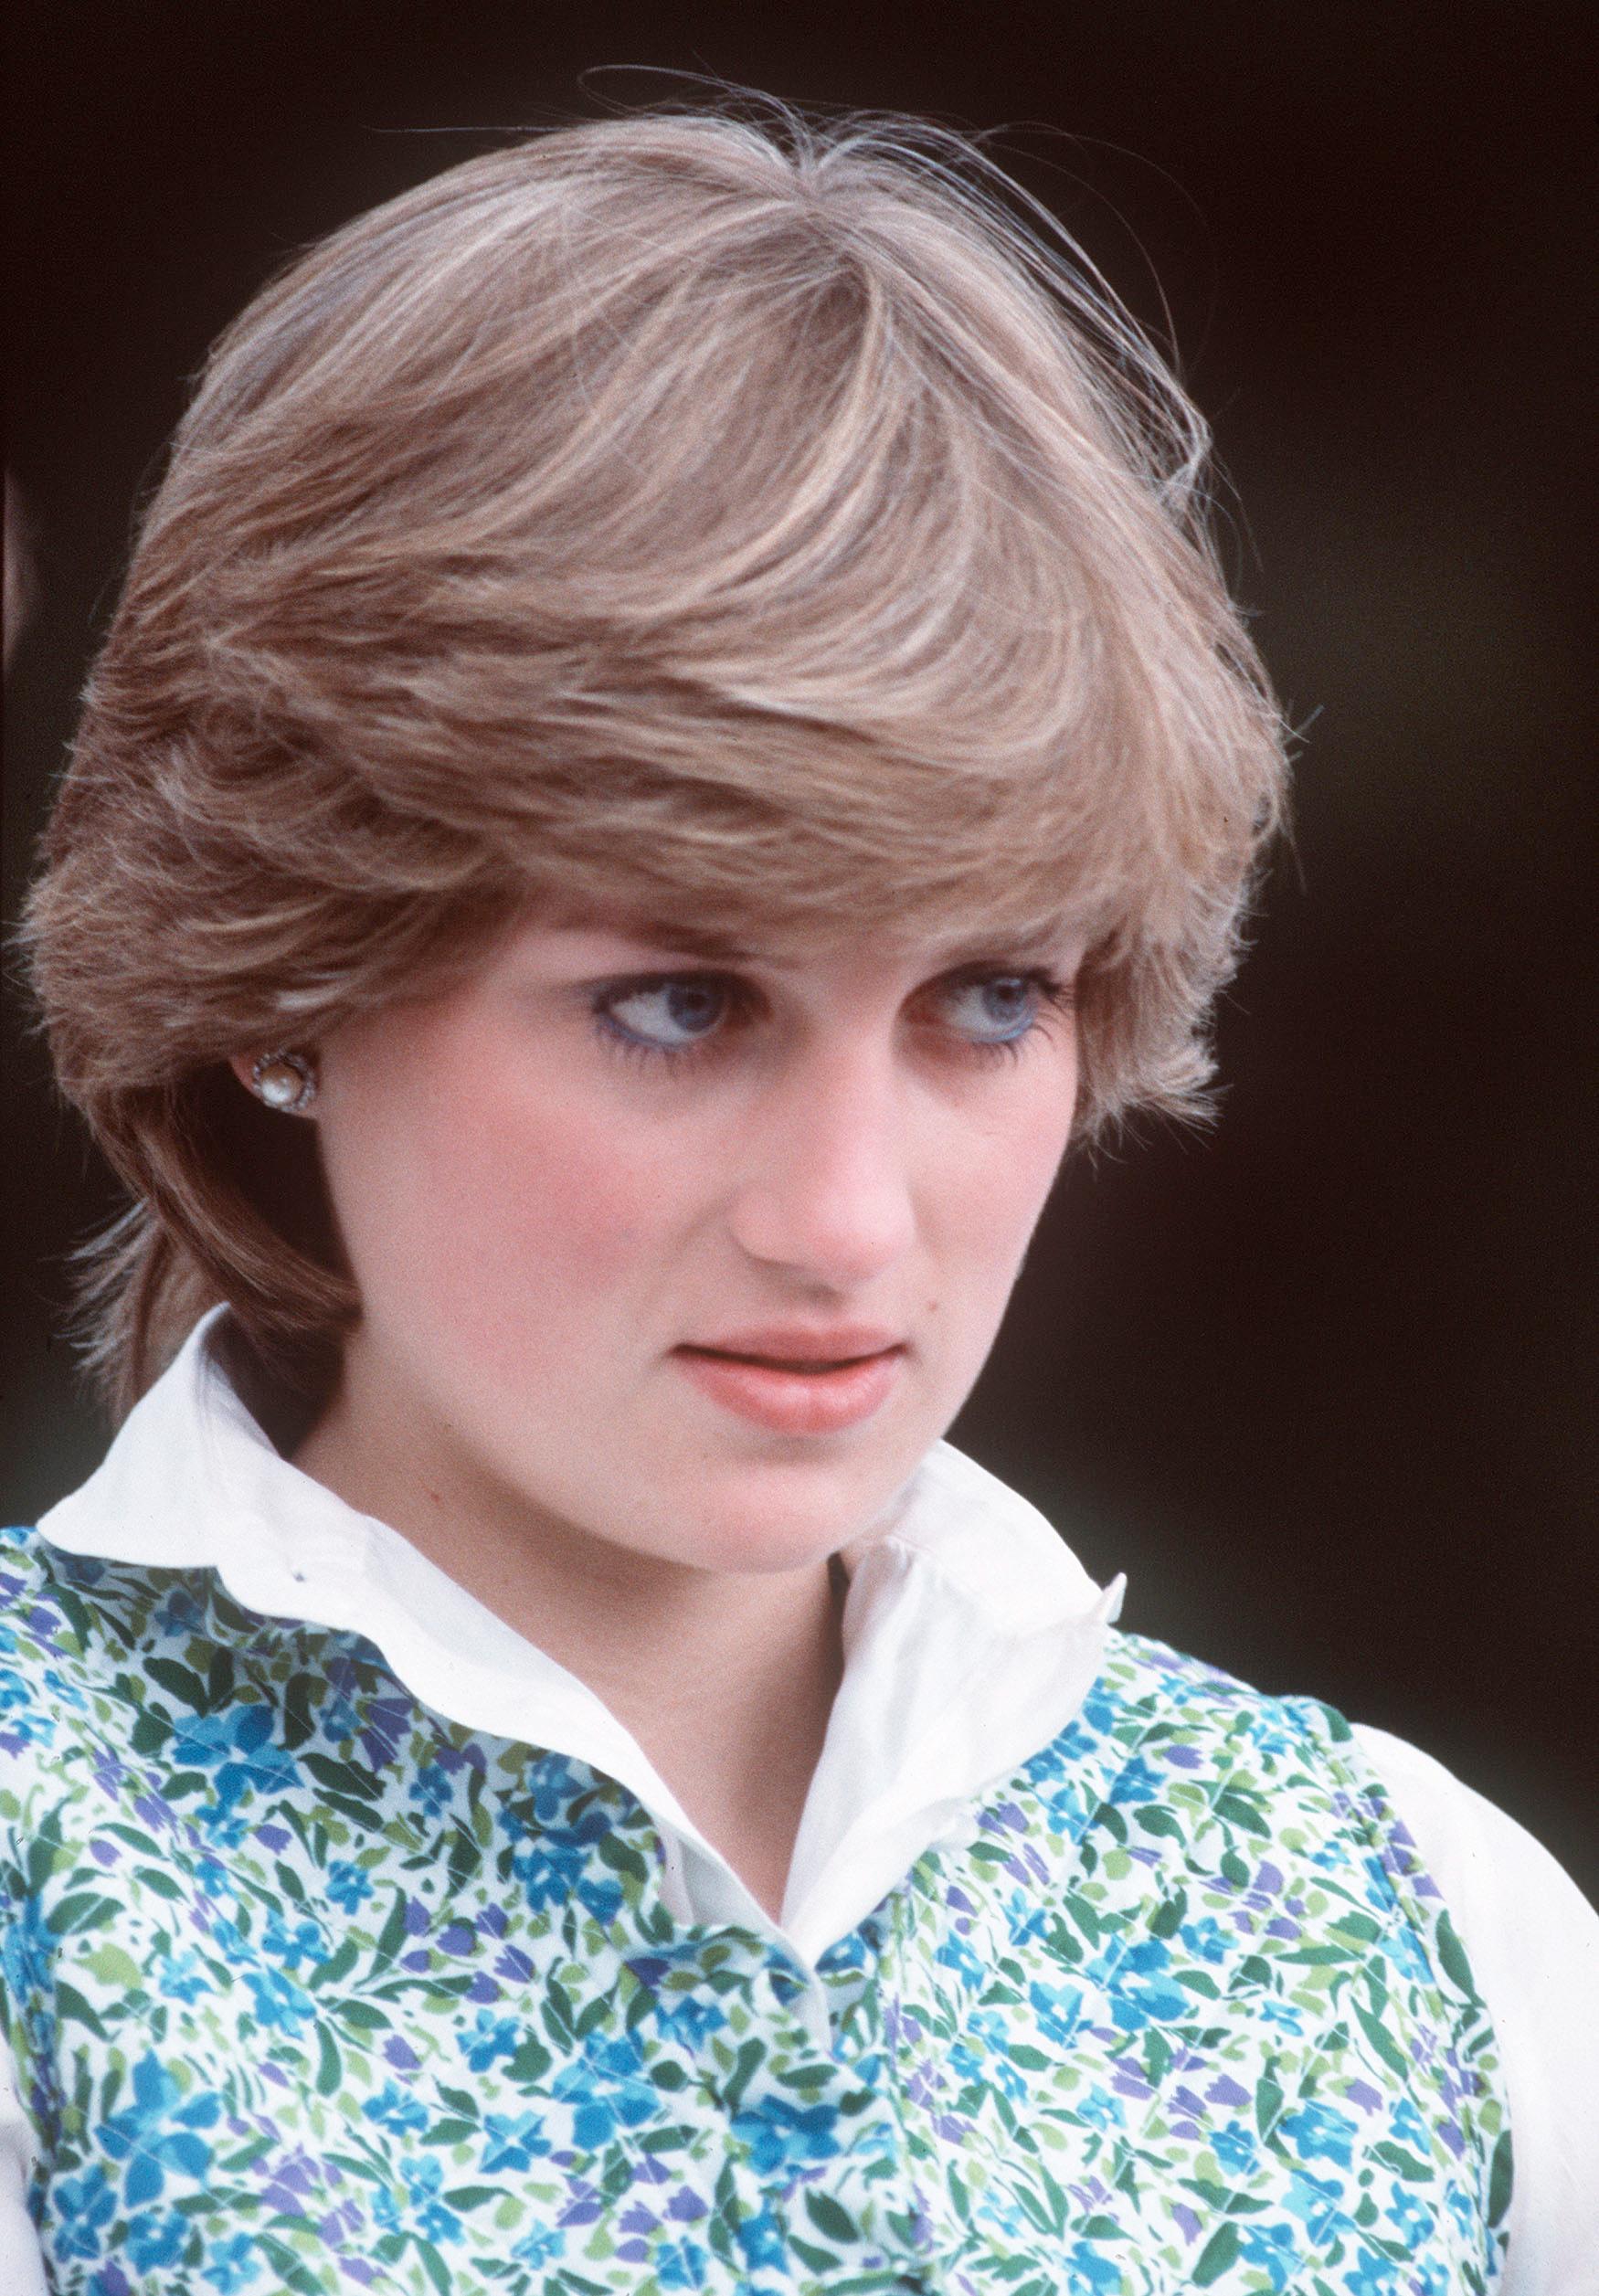 1981: Diana Frances Spencer møtte offentligheten som en ung, uskyldig og søt 19-åring, som snart skulle tre inn i de kongelige rekker. Med store perleøredobber, perlesmykker, pologensere, skjerf i halsen og klassiske skjorter fremsto Diana først som «preppy» og beskjeden.